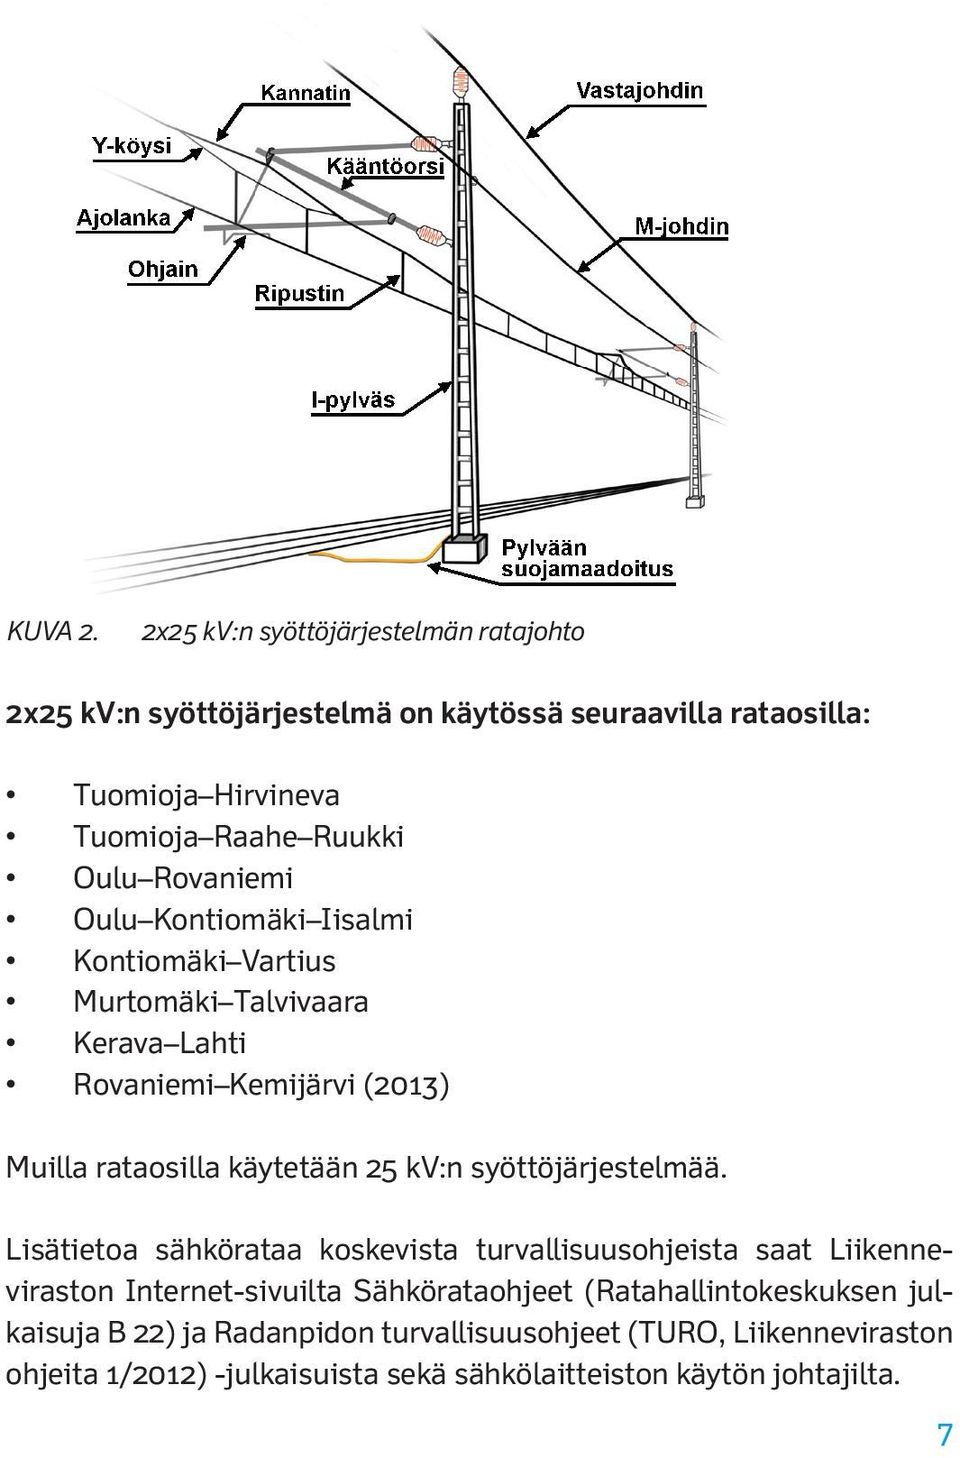 Iisalmi Kontiomäki Vartius Murtomäki Talvivaara Kerava Lahti Rovaniemi Kemijärvi (2013) Muilla rataosilla käytetään 25 kv:n syöttöjärjestelmää.